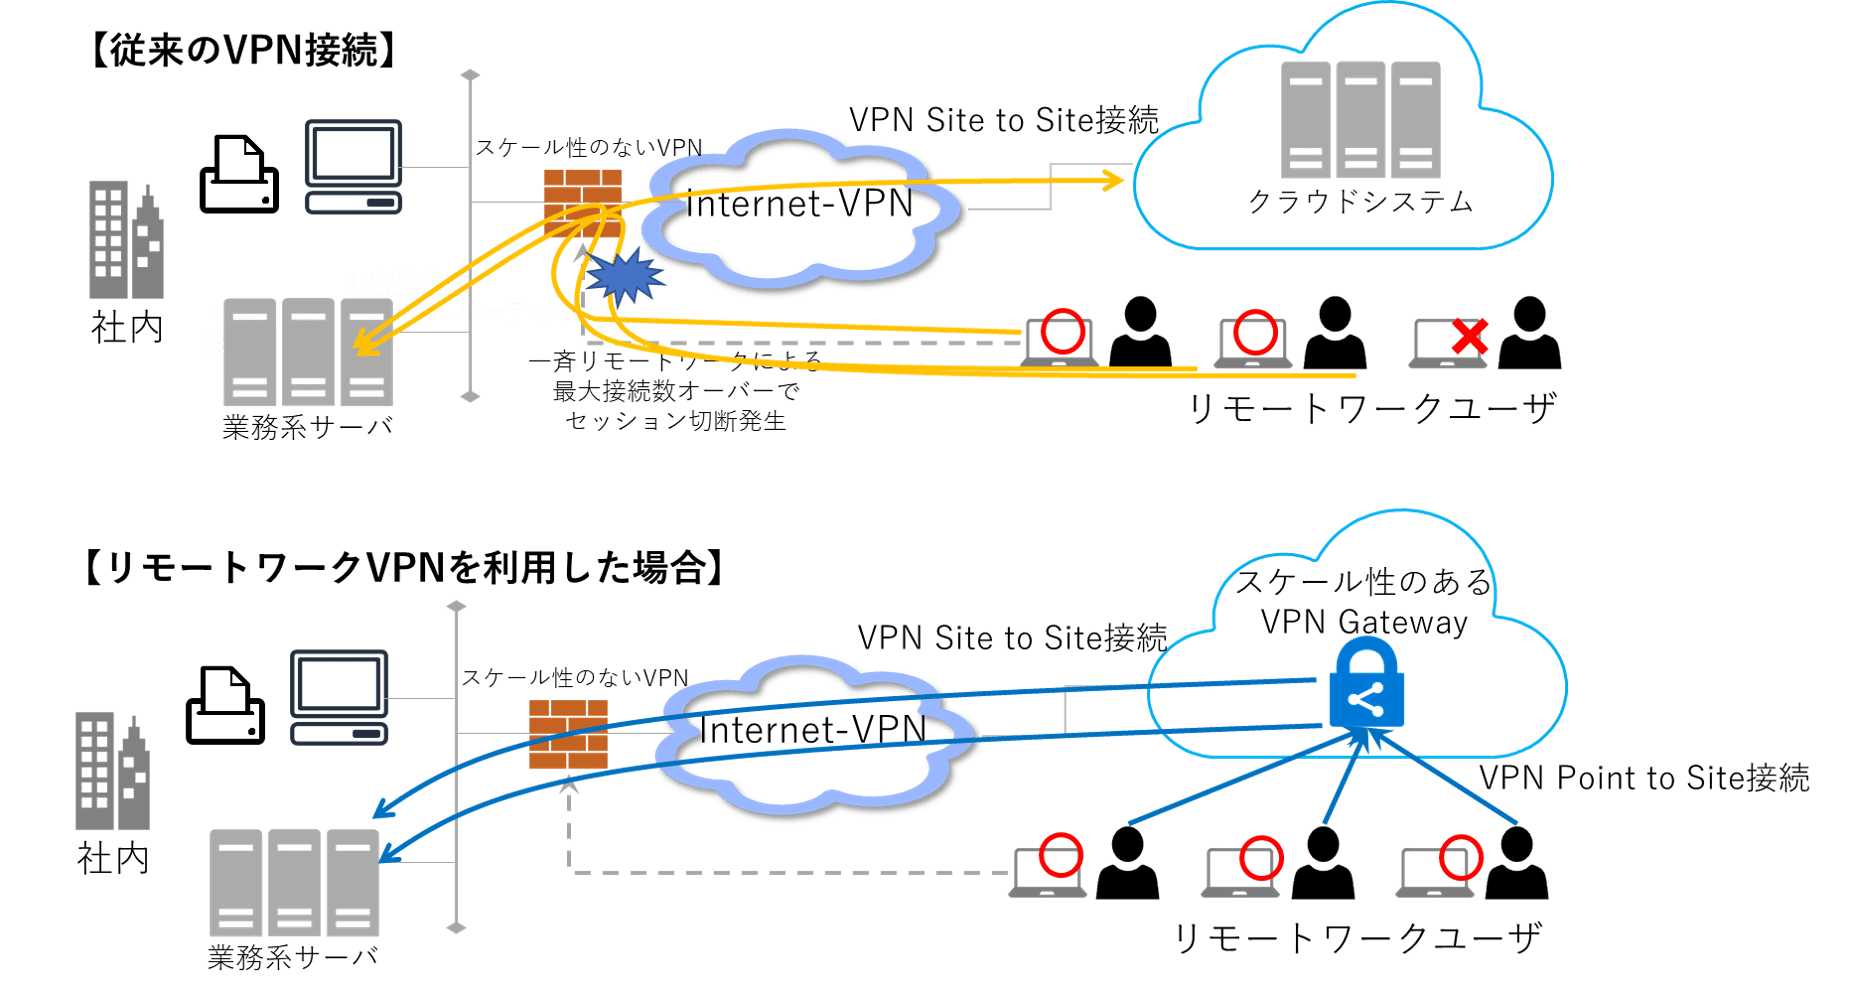 従来のVPN接続の場合とEcoOne AWS/Azure VPN for リモートワークを利用した場合